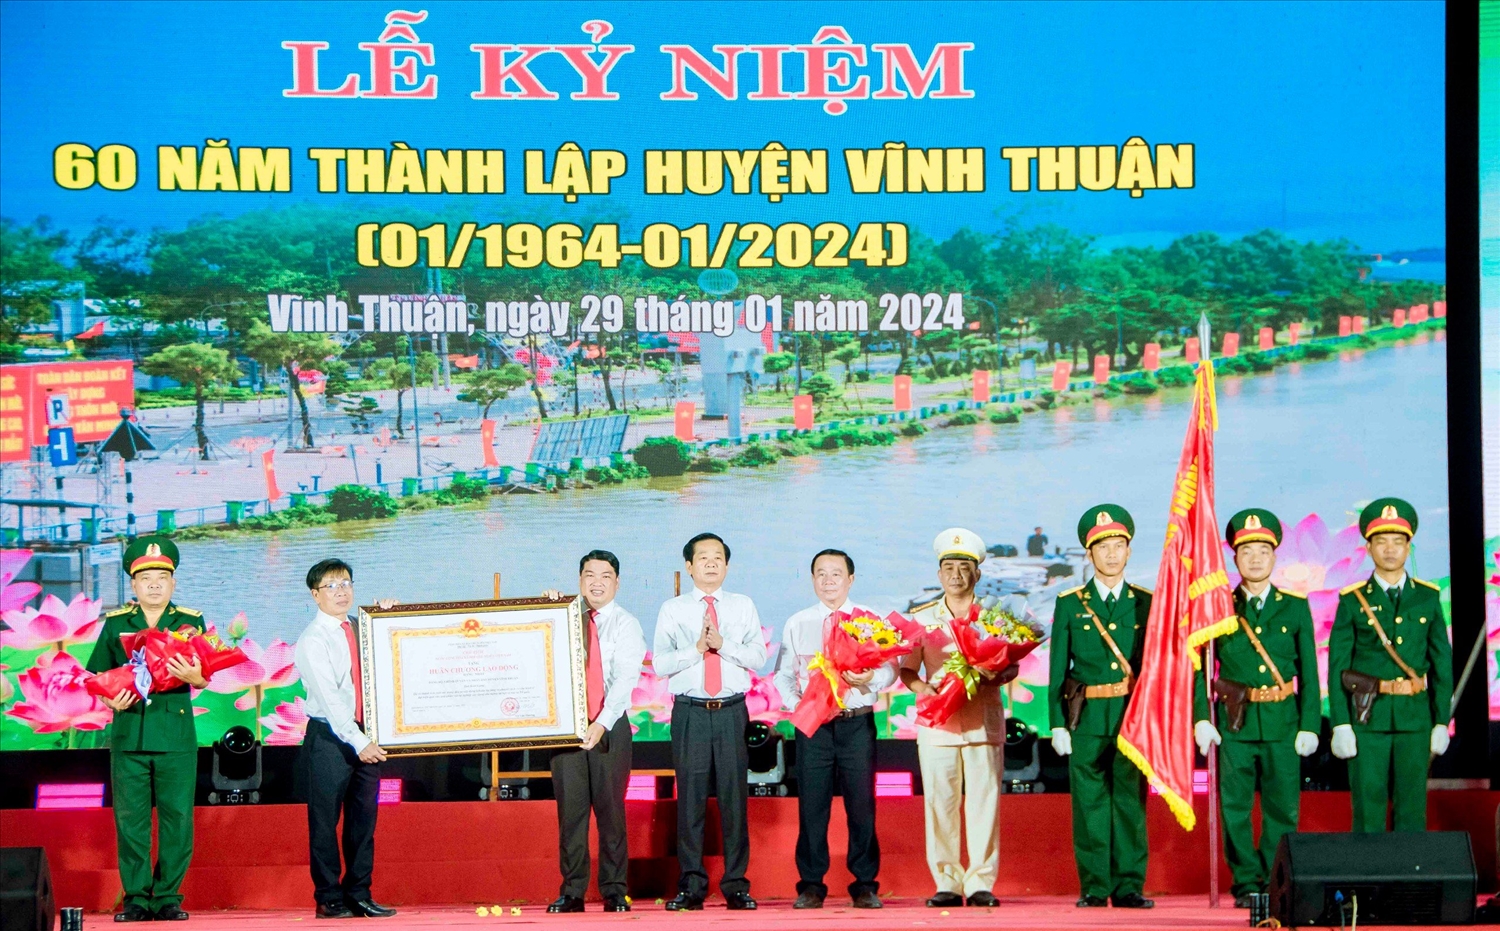 Thừa ủy quyền của Chủ tịch nước, Bí thư Tỉnh ủy Kiên Giang Đỗ Thanh Bình đã trao Huân chương Lao động hạng Nhất cho Đảng bộ, chính quyền và Nhân dân huyện Vĩnh Thuận